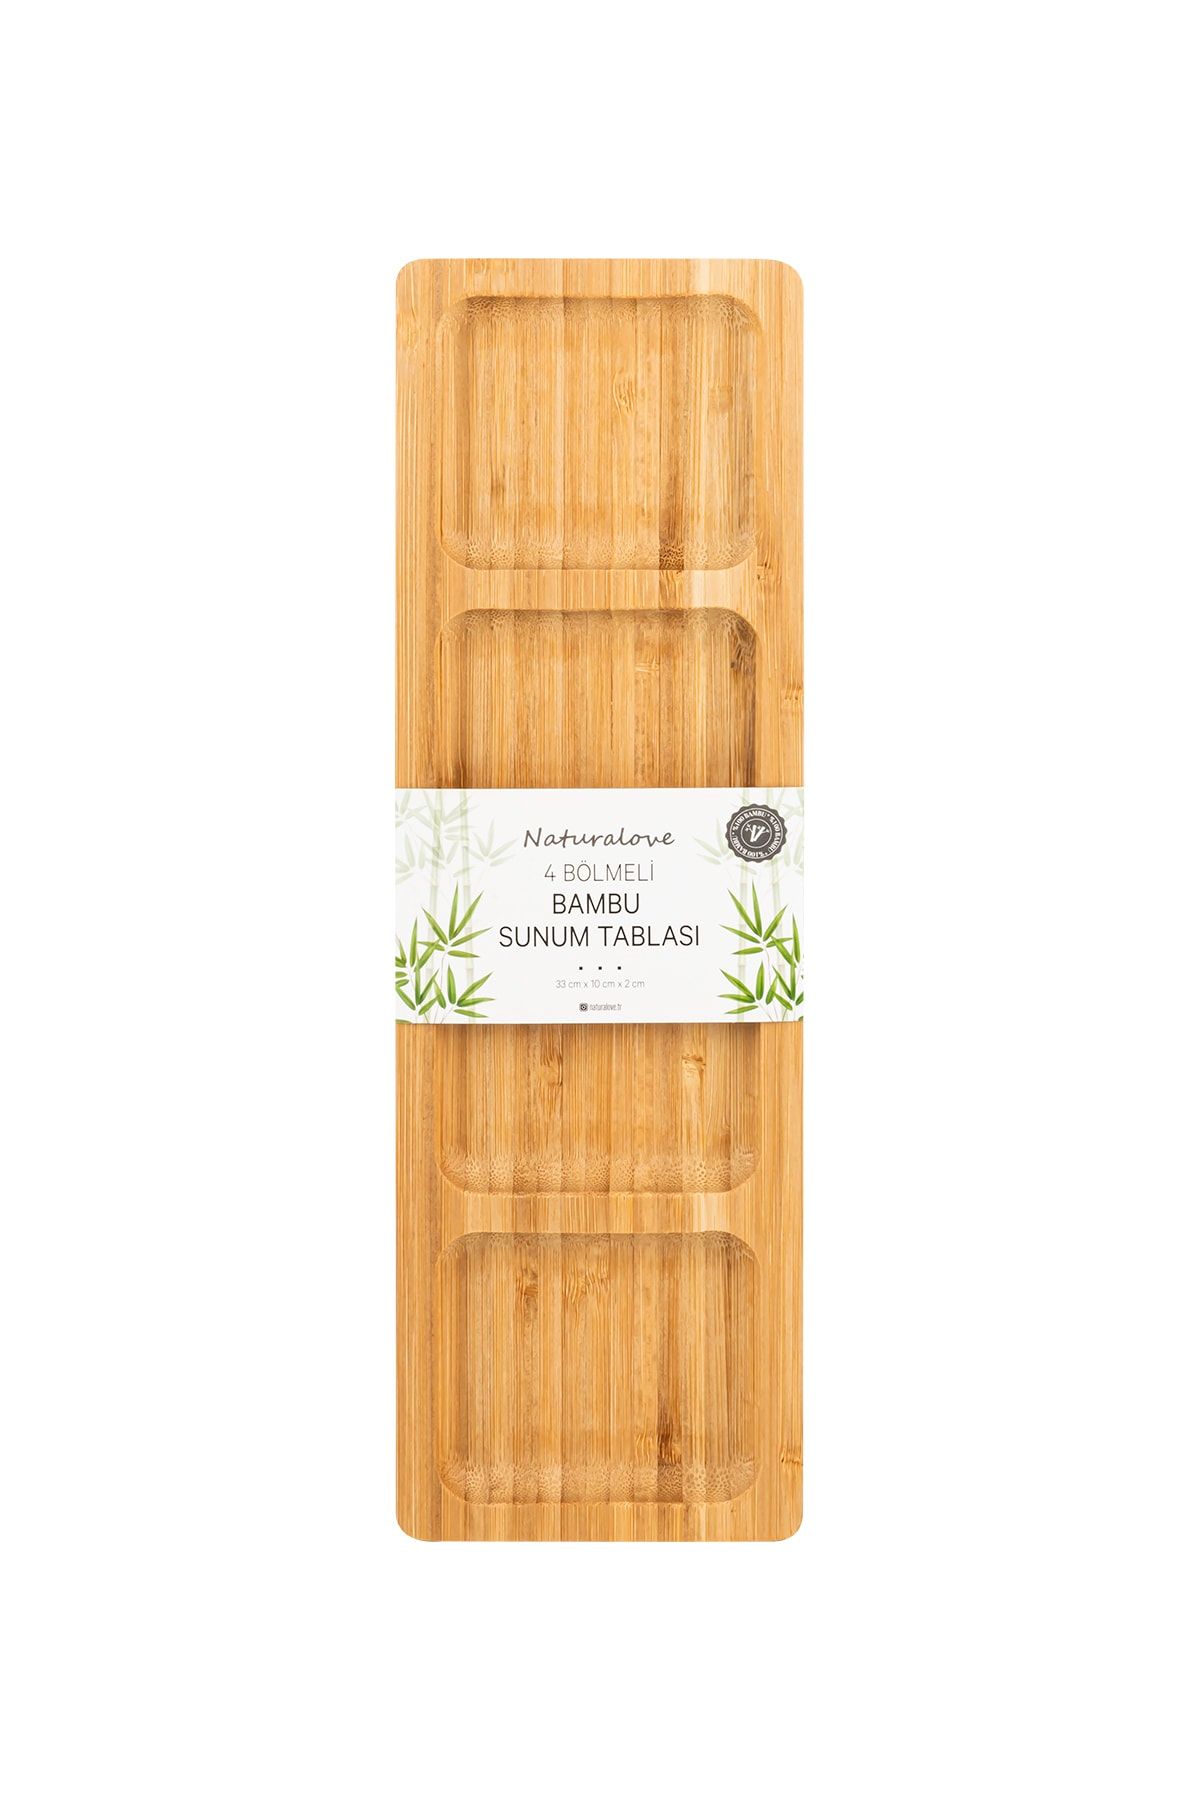 Naturalove Bambu Sunum Tabağı - 4 Bölmeli